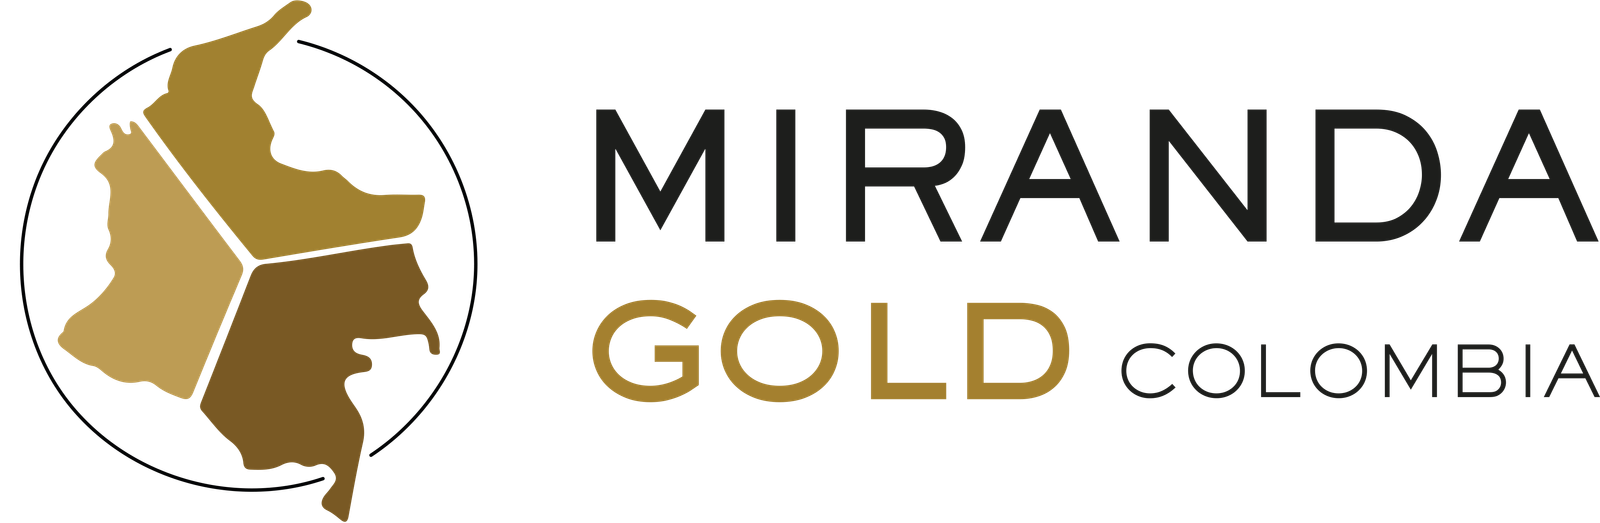 MIRANDA-GOLD